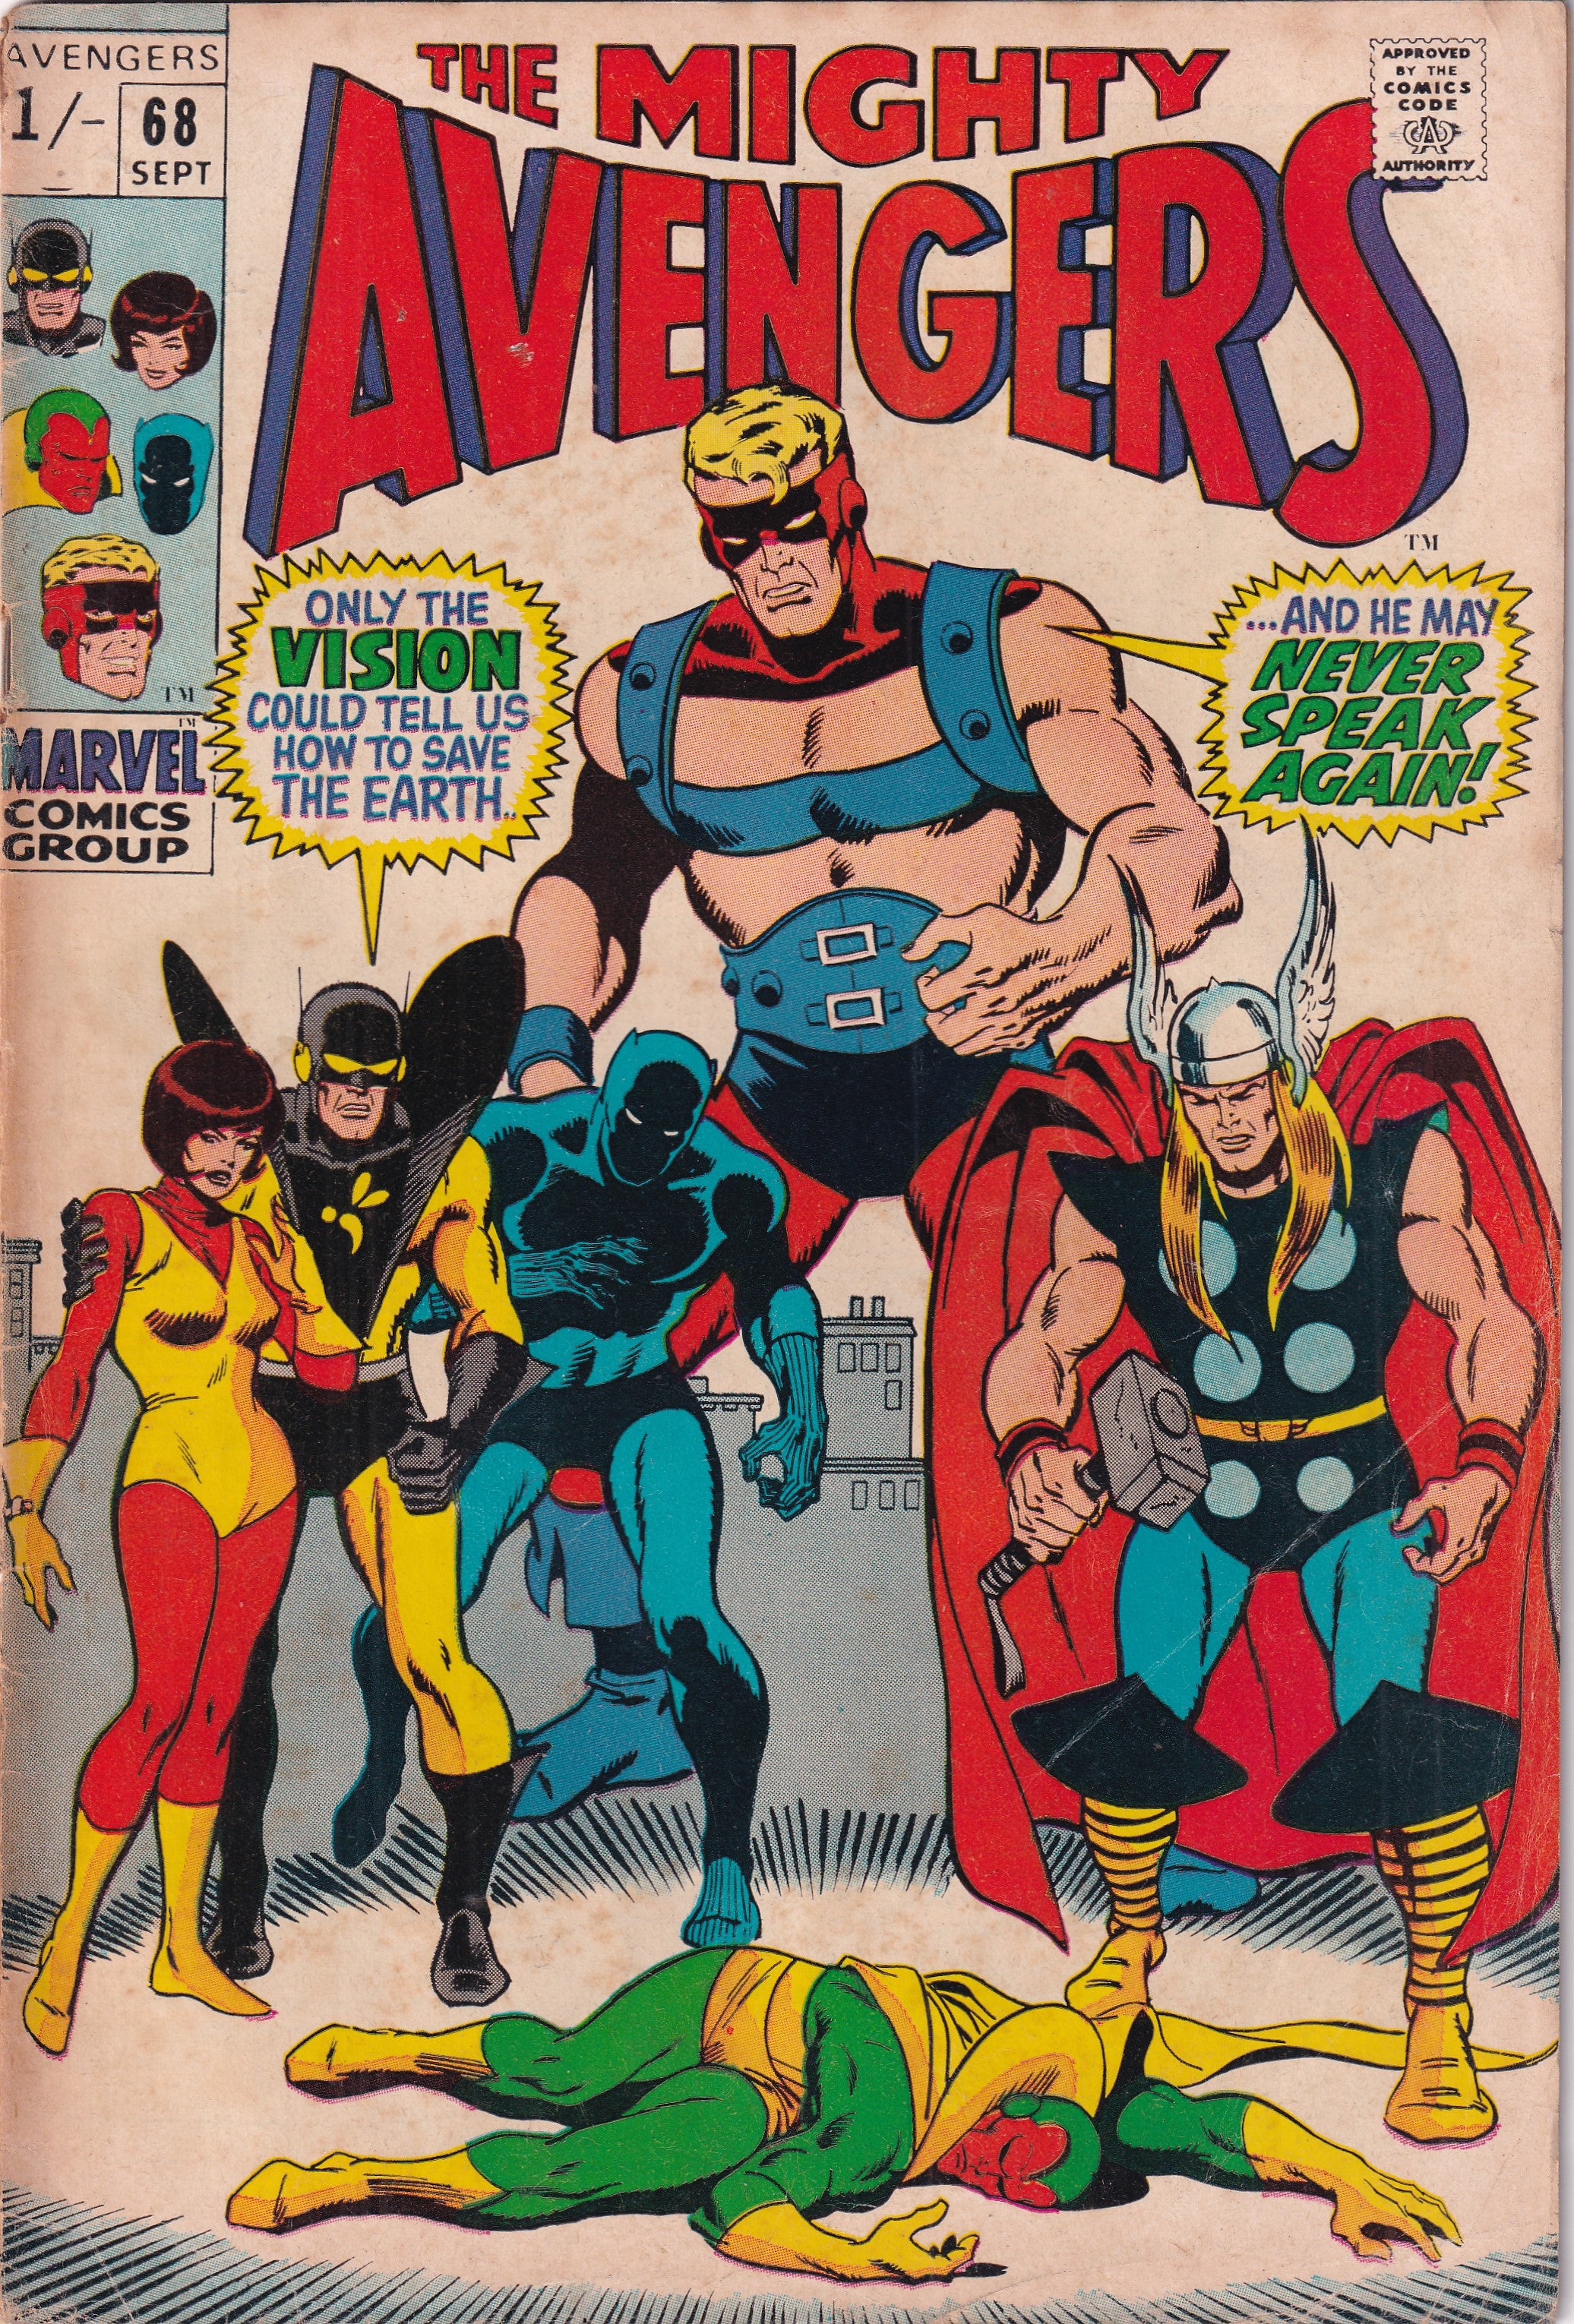 AVENGERS #68 - Slab City Comics 